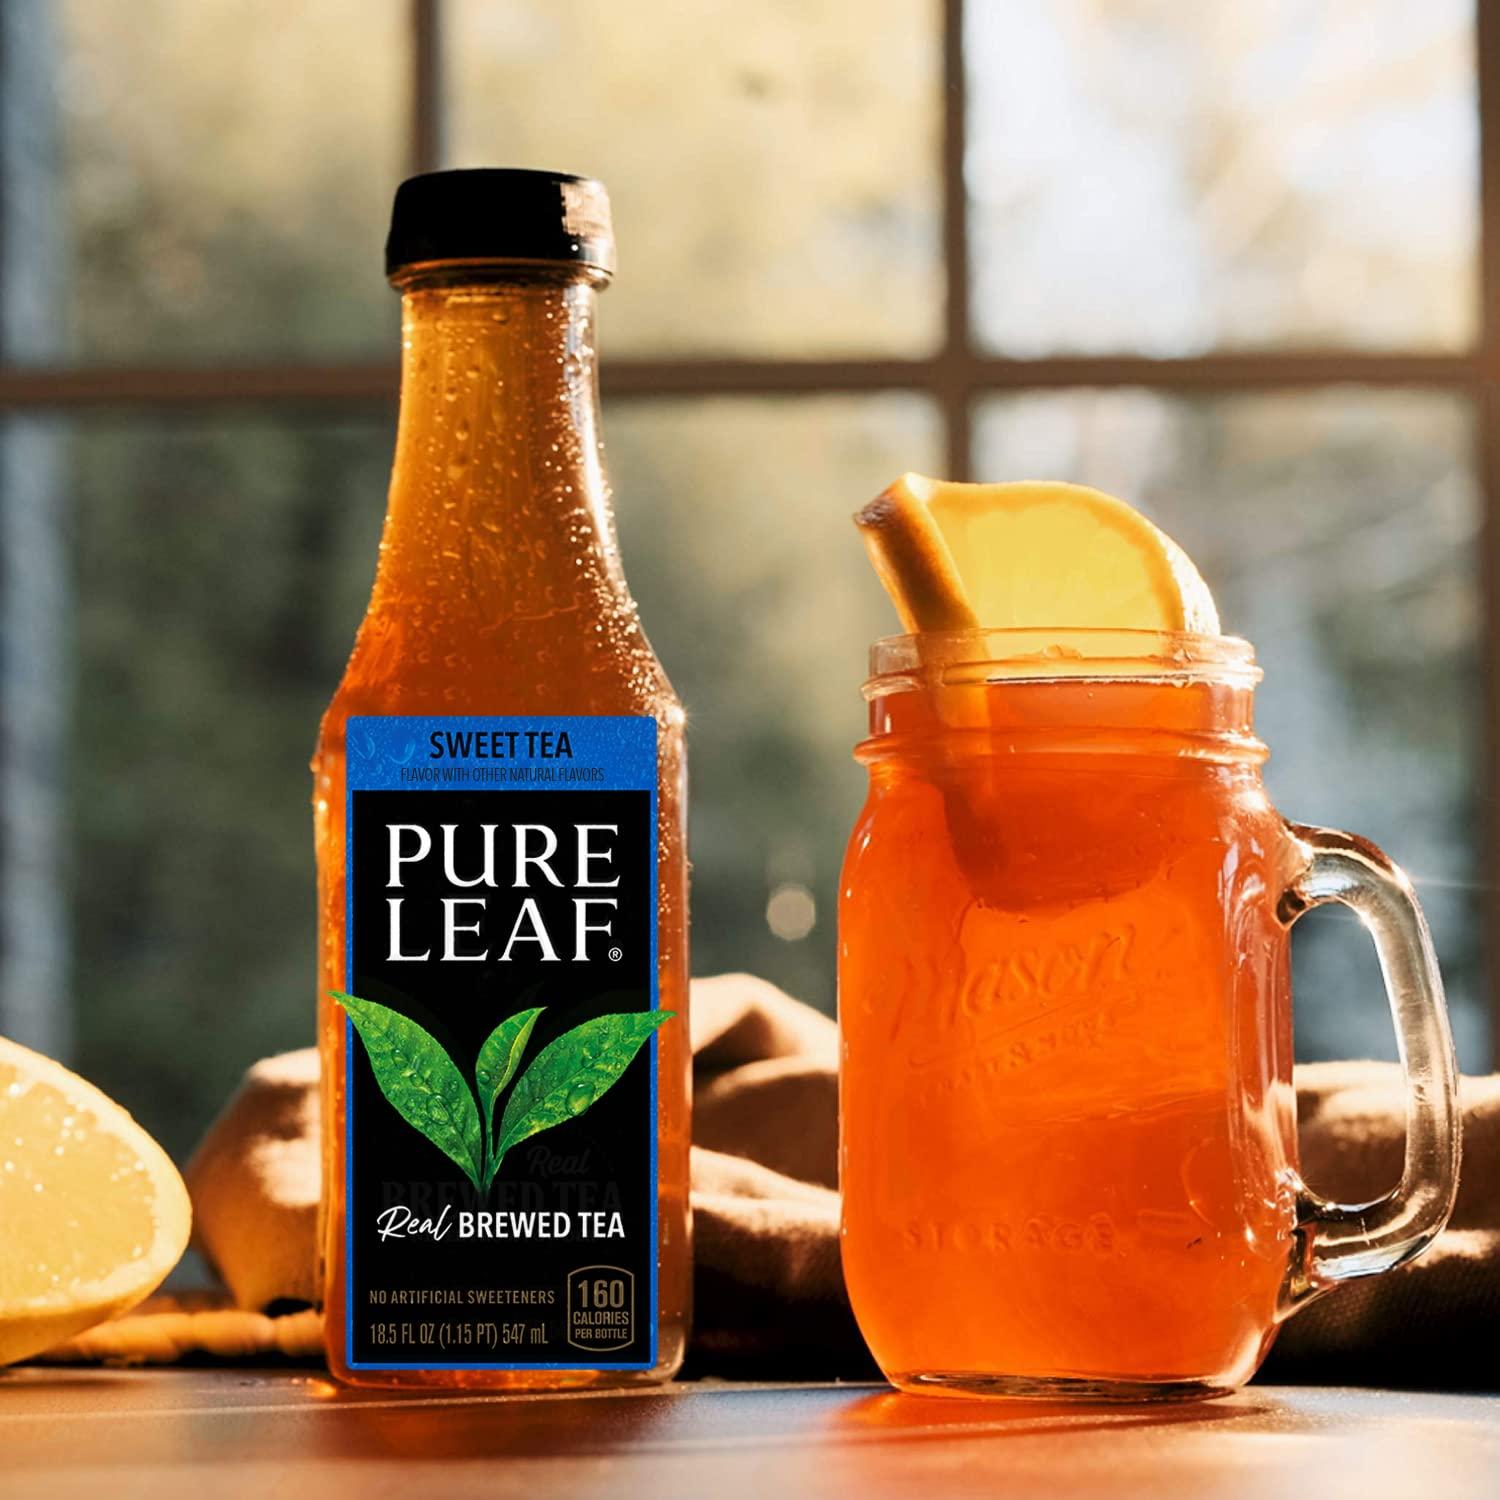 Lipton Pure Leaf Ice Tea 18.5 oz Bottle